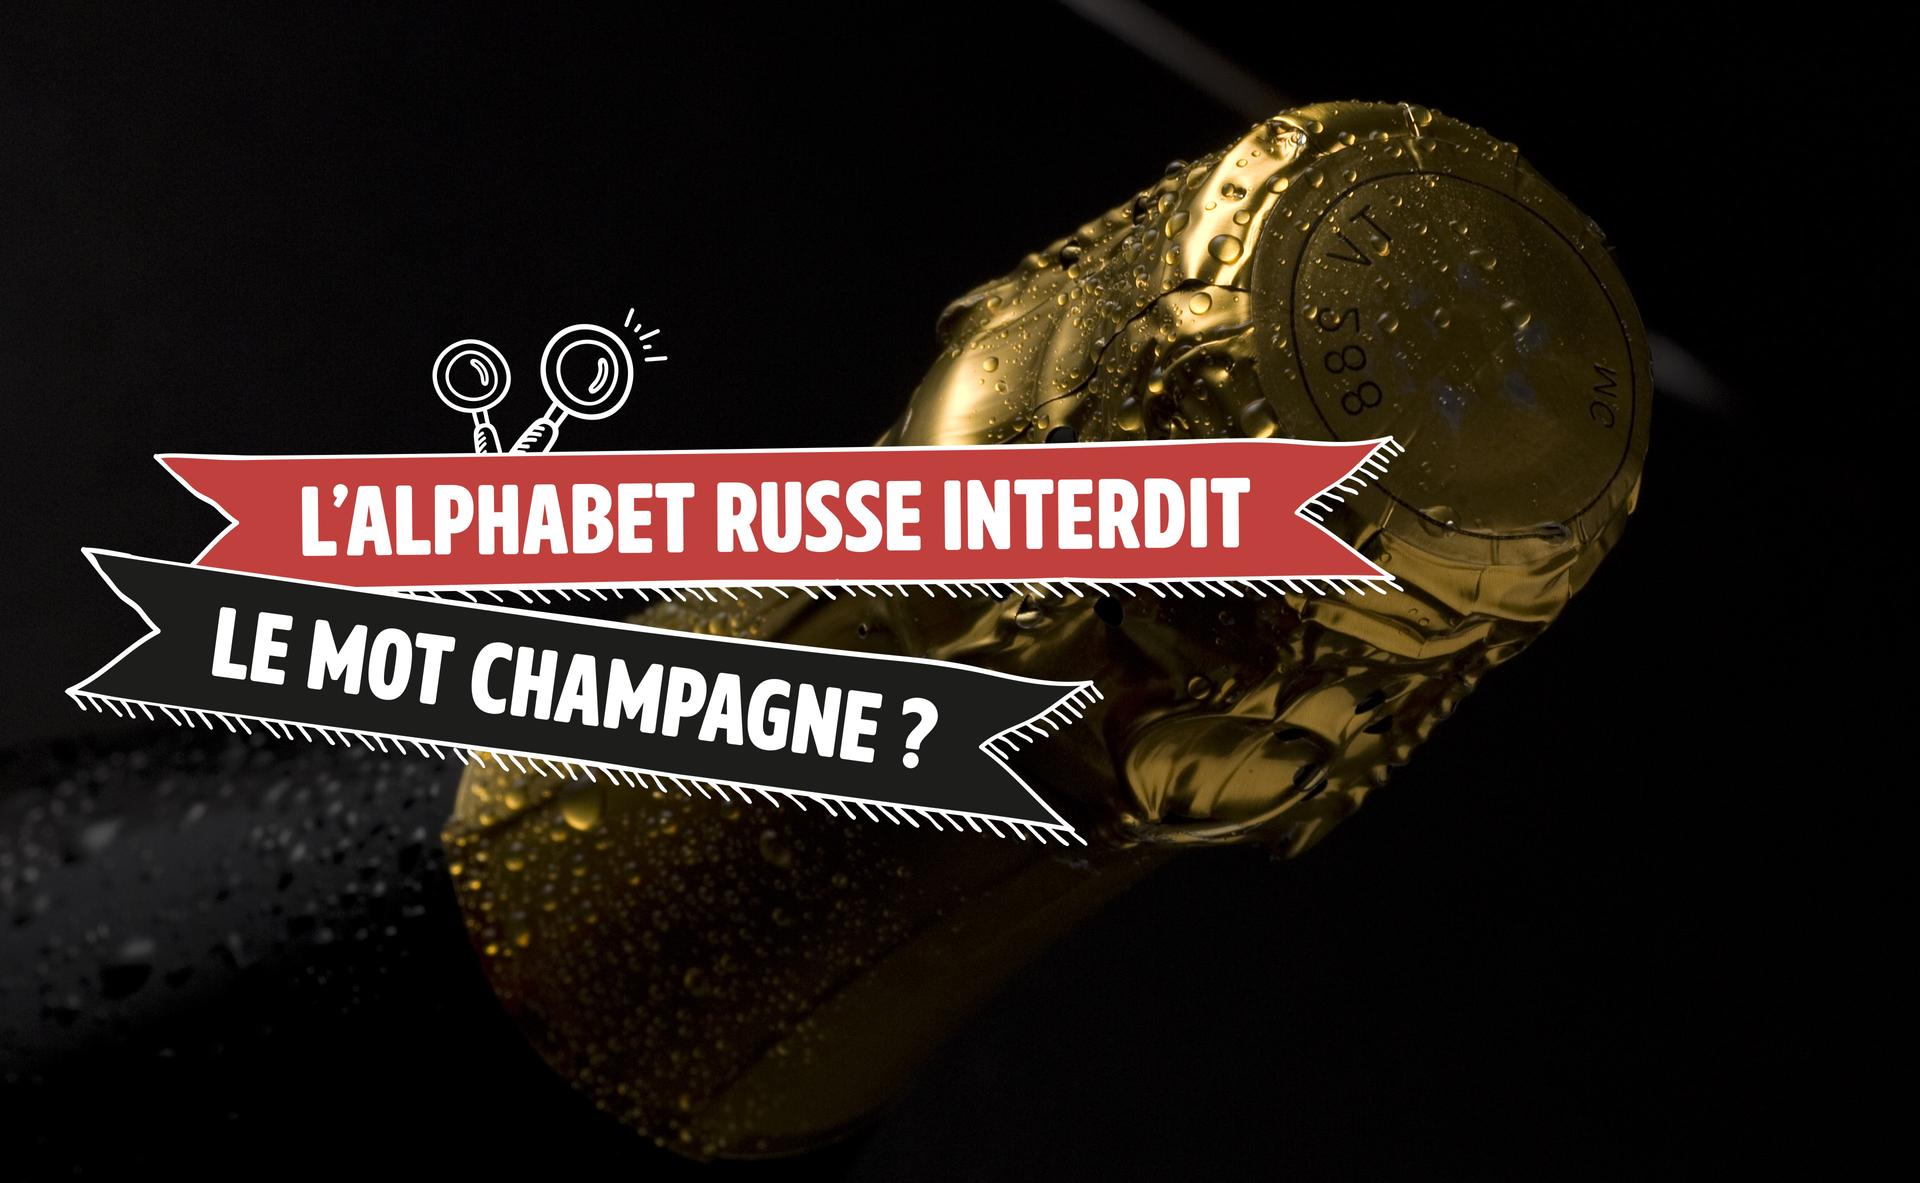 L'alphabet russe interdit le mot champagne ?